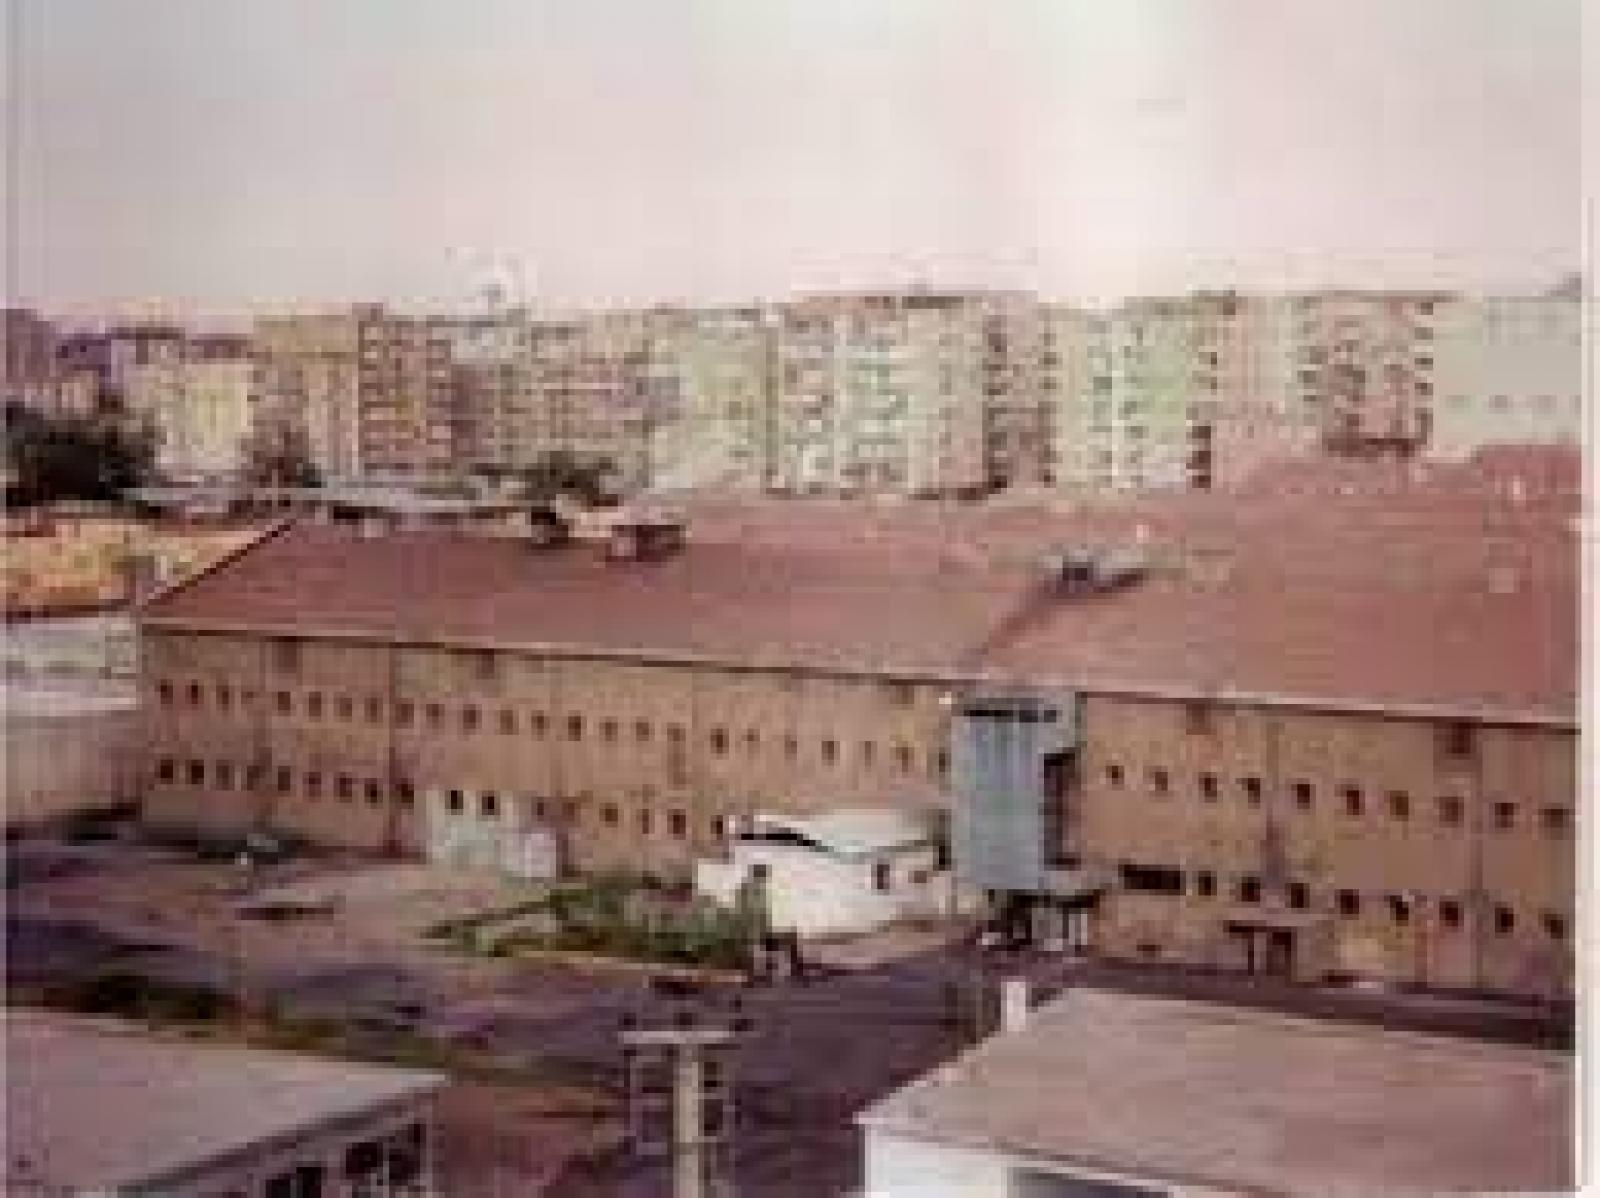 Diyarbakir Prison’s picture, 2000s, Diyarbakır